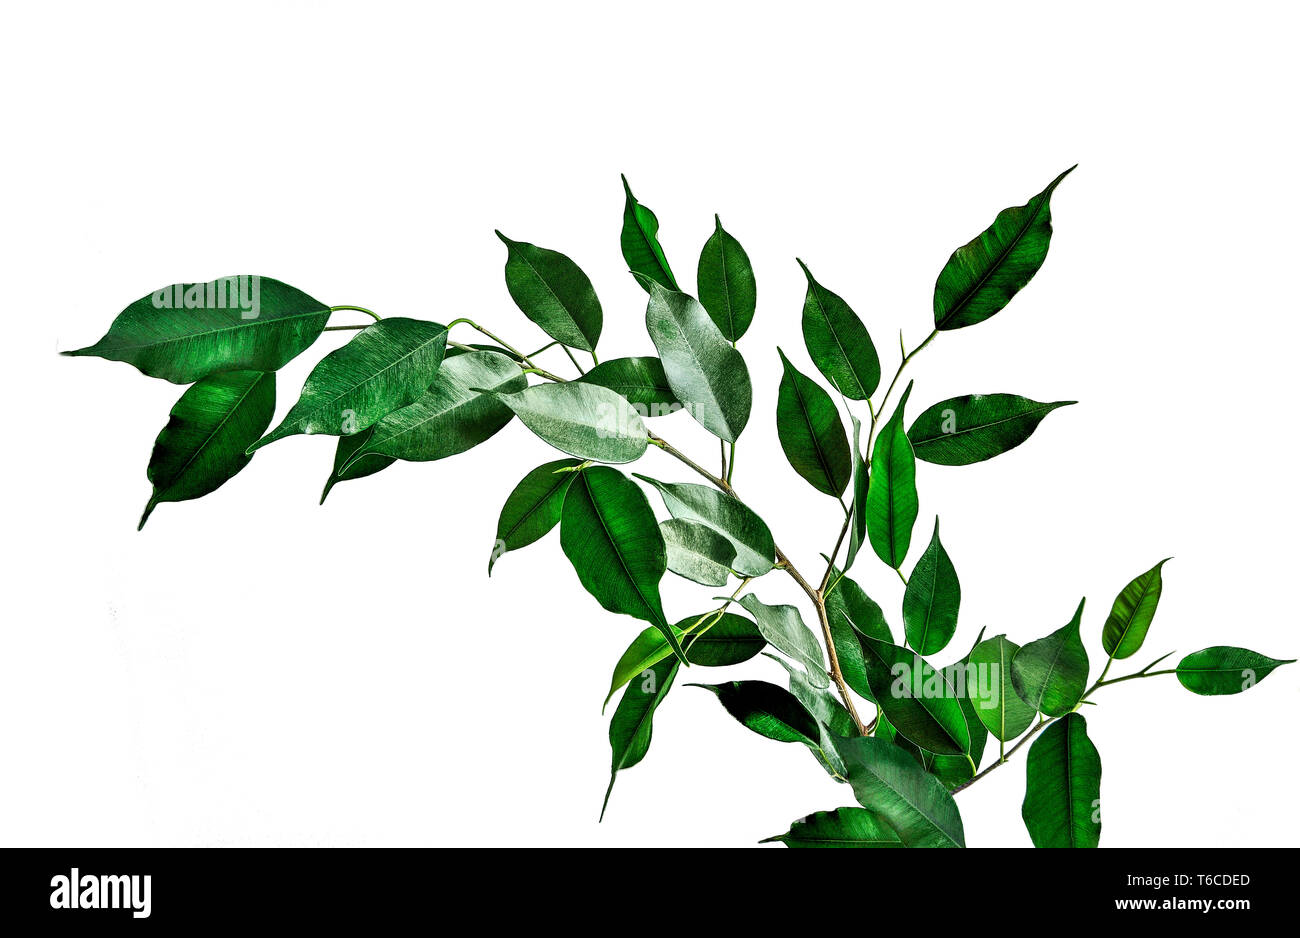 Twig von Ficus benjamina mit grünen cuspidal Blätter auf weißem Hintergrund. Ficus - beliebte Zimmerpflanze für Innen Blumenzucht, phytodesign und l Stockfoto